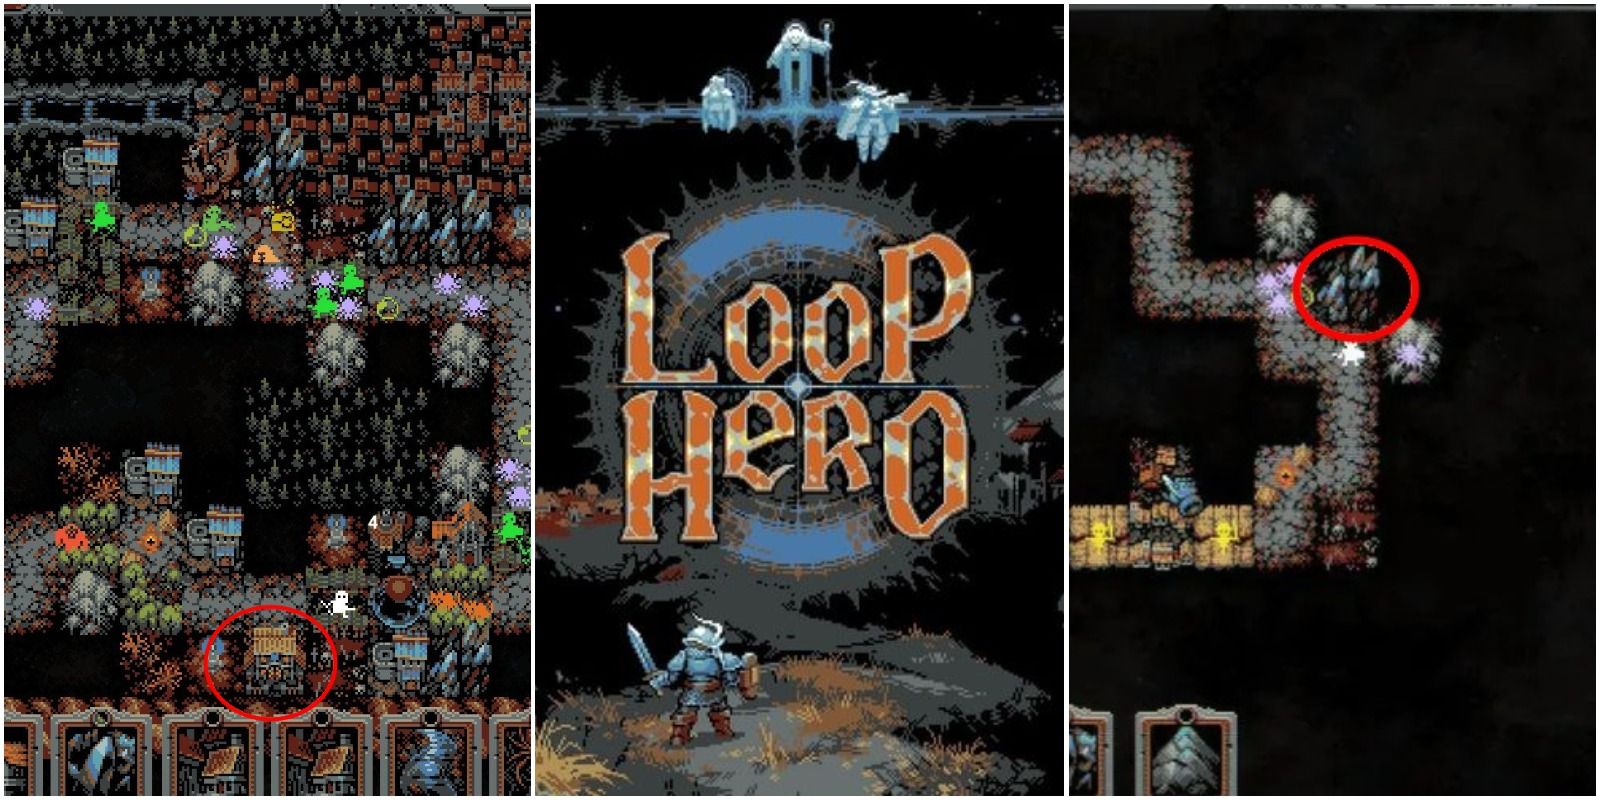 loop hero tiles combo